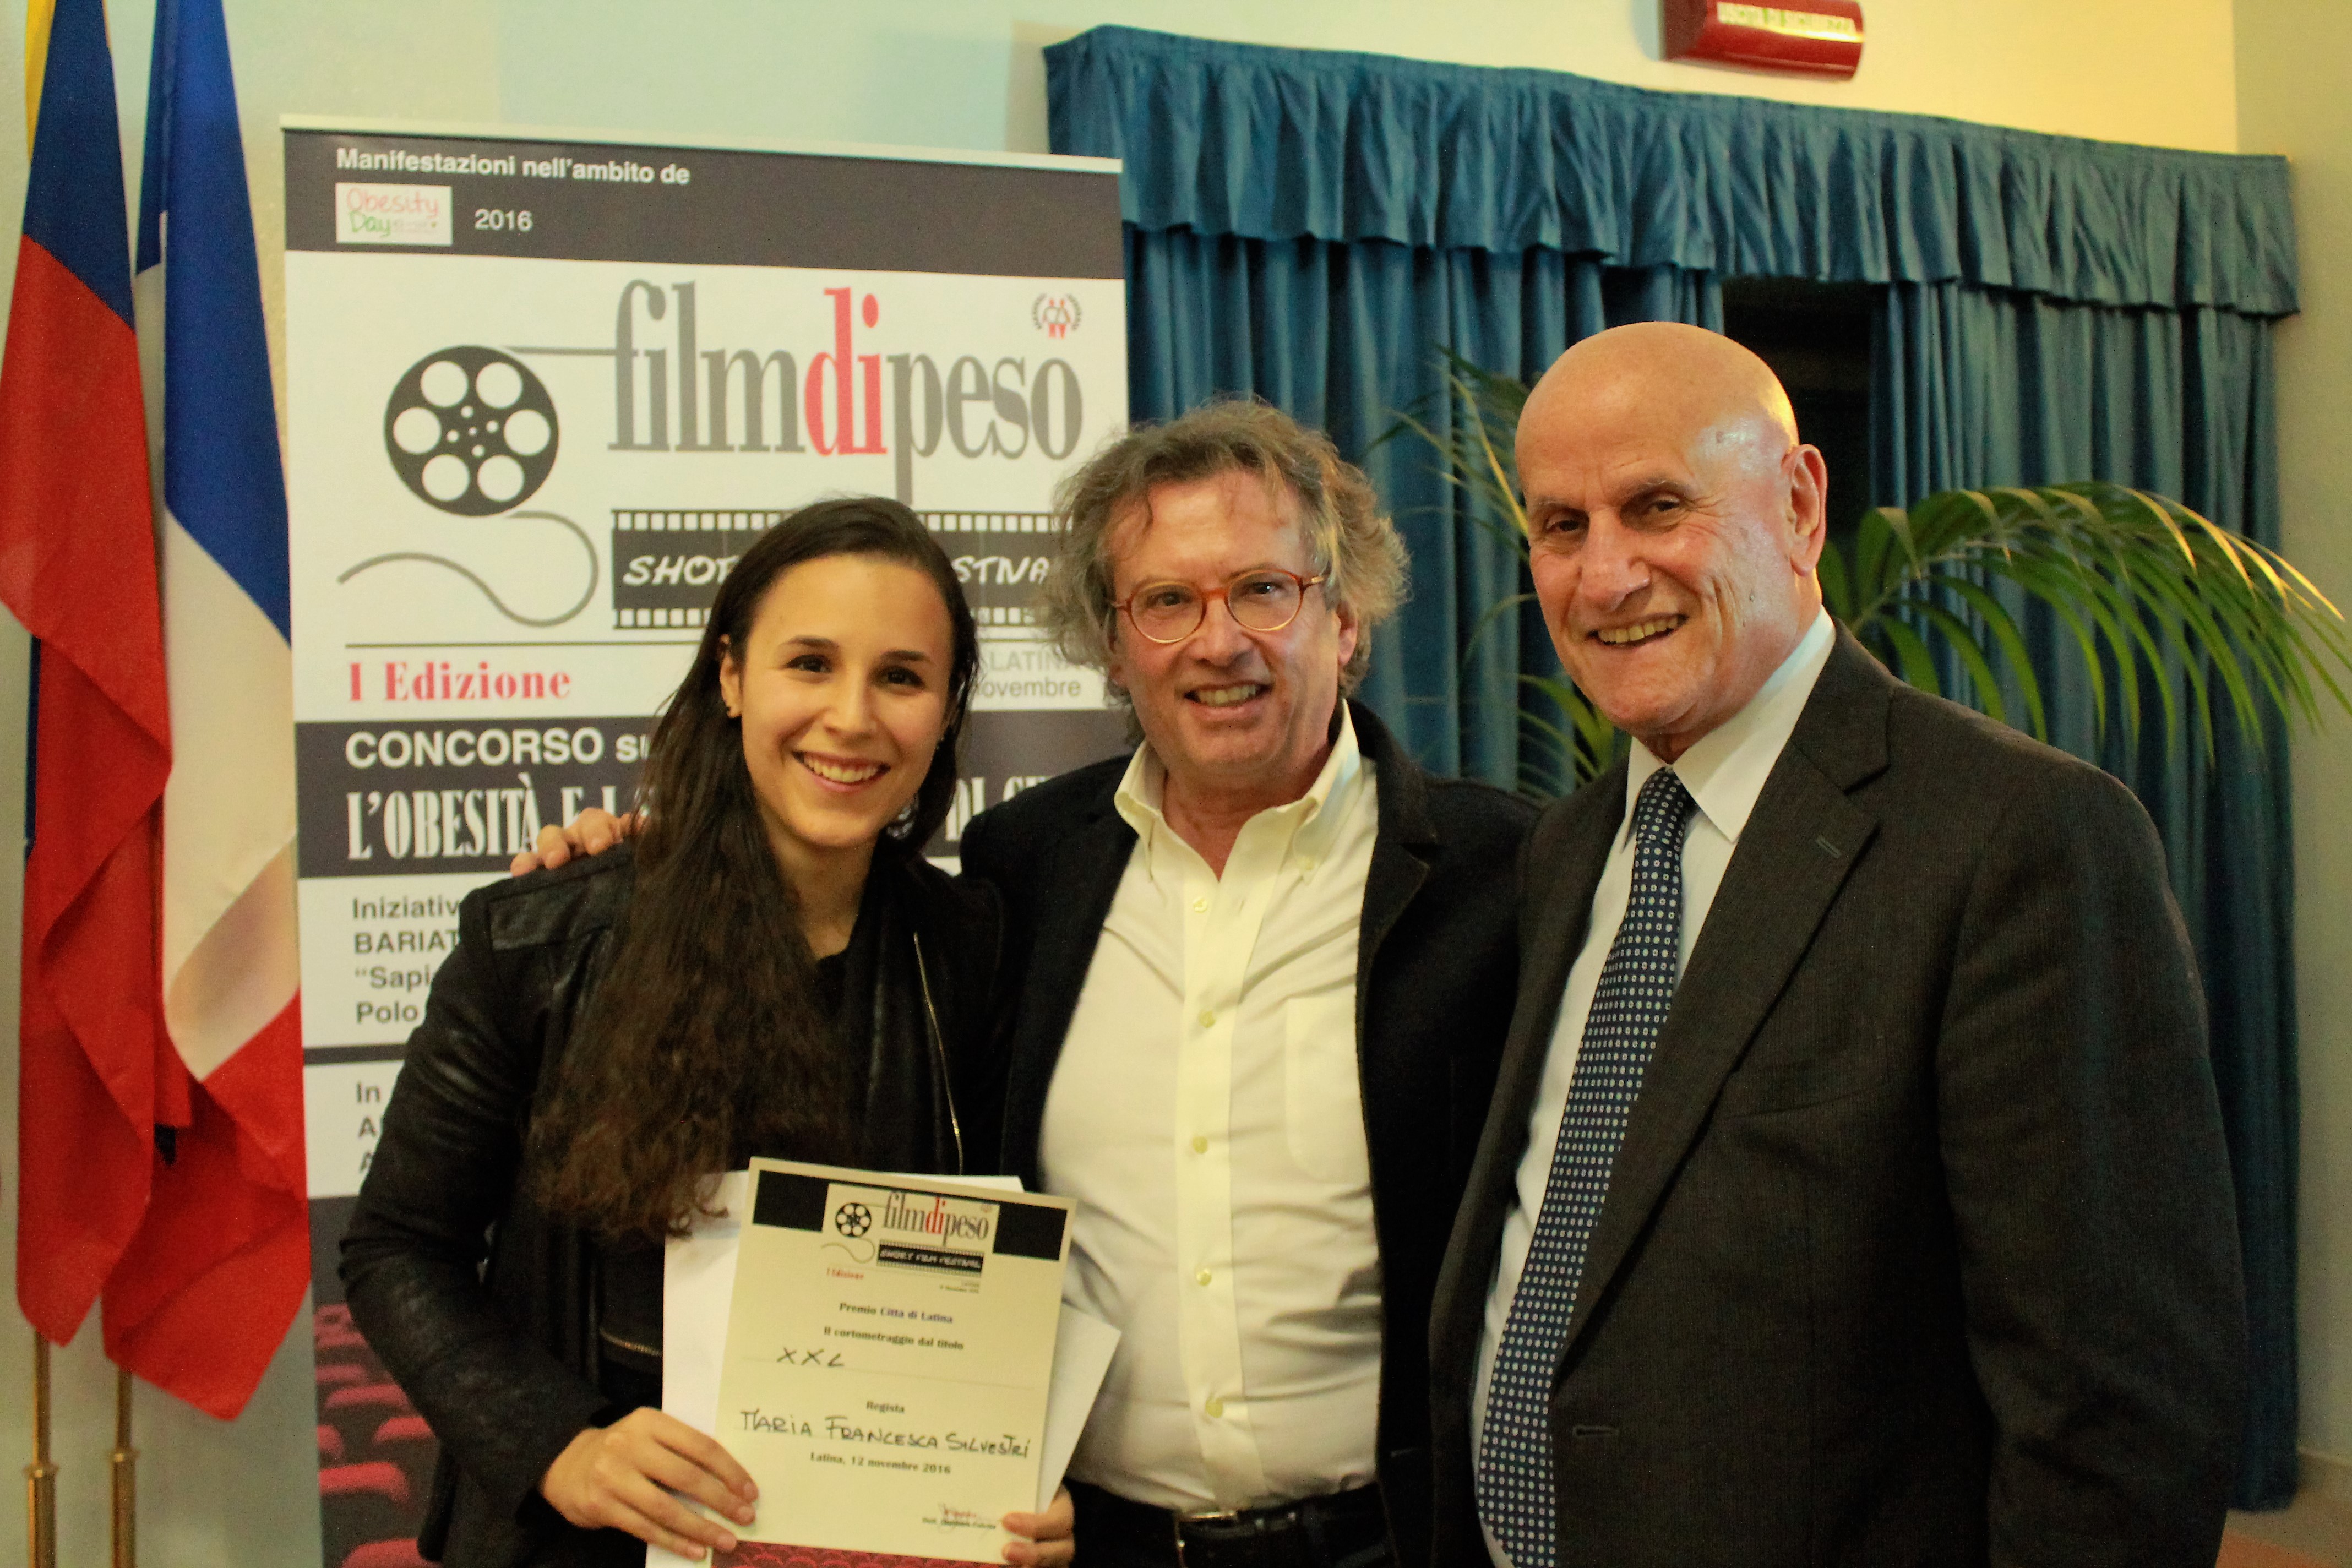 Latina, Cinefestival: "XXL" e "Cronache di una rinascita" vincitori della 1^ edizione di "FILMDIPESO"